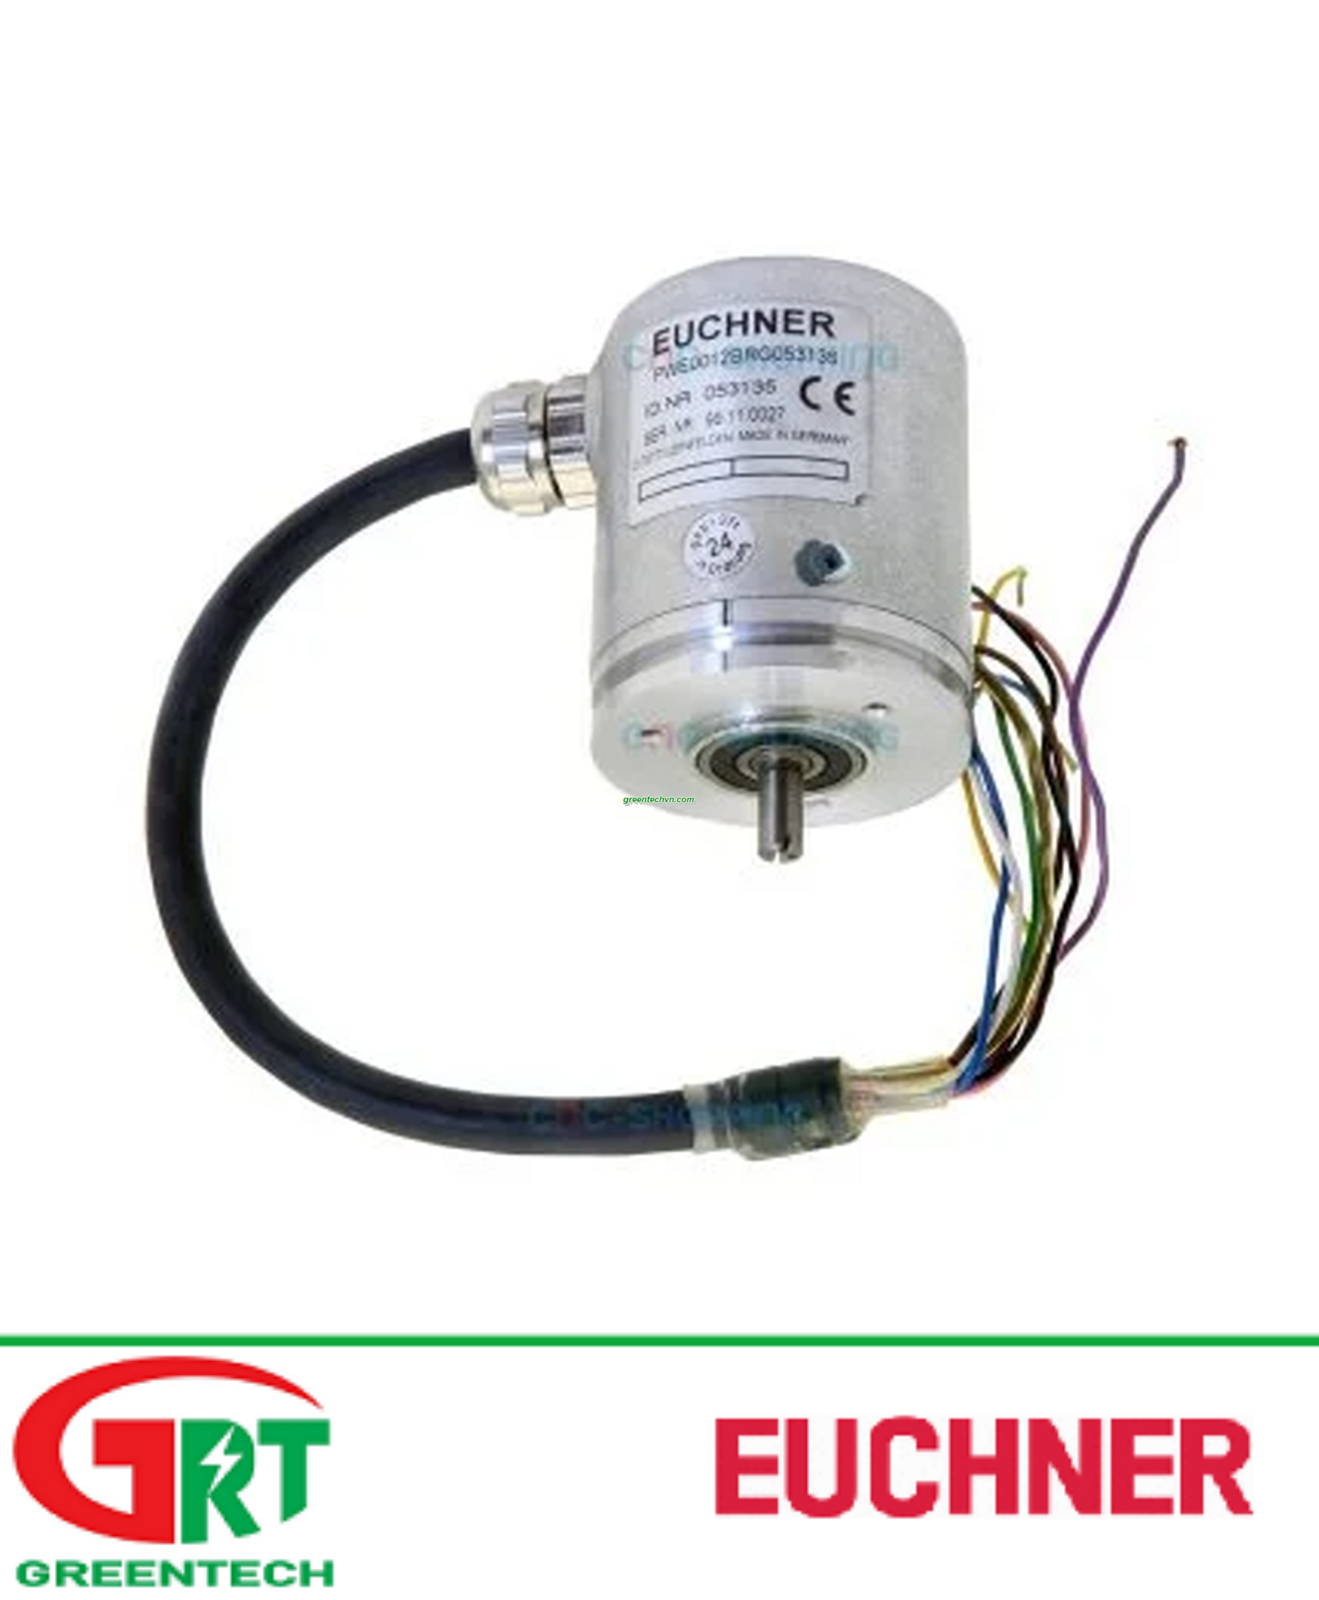 Euchner PWE0012BRG053135 | Cảm biến vòng quay Euchner PWE0012BRG053135 | Encoder Euchner PWE0012BRG053135